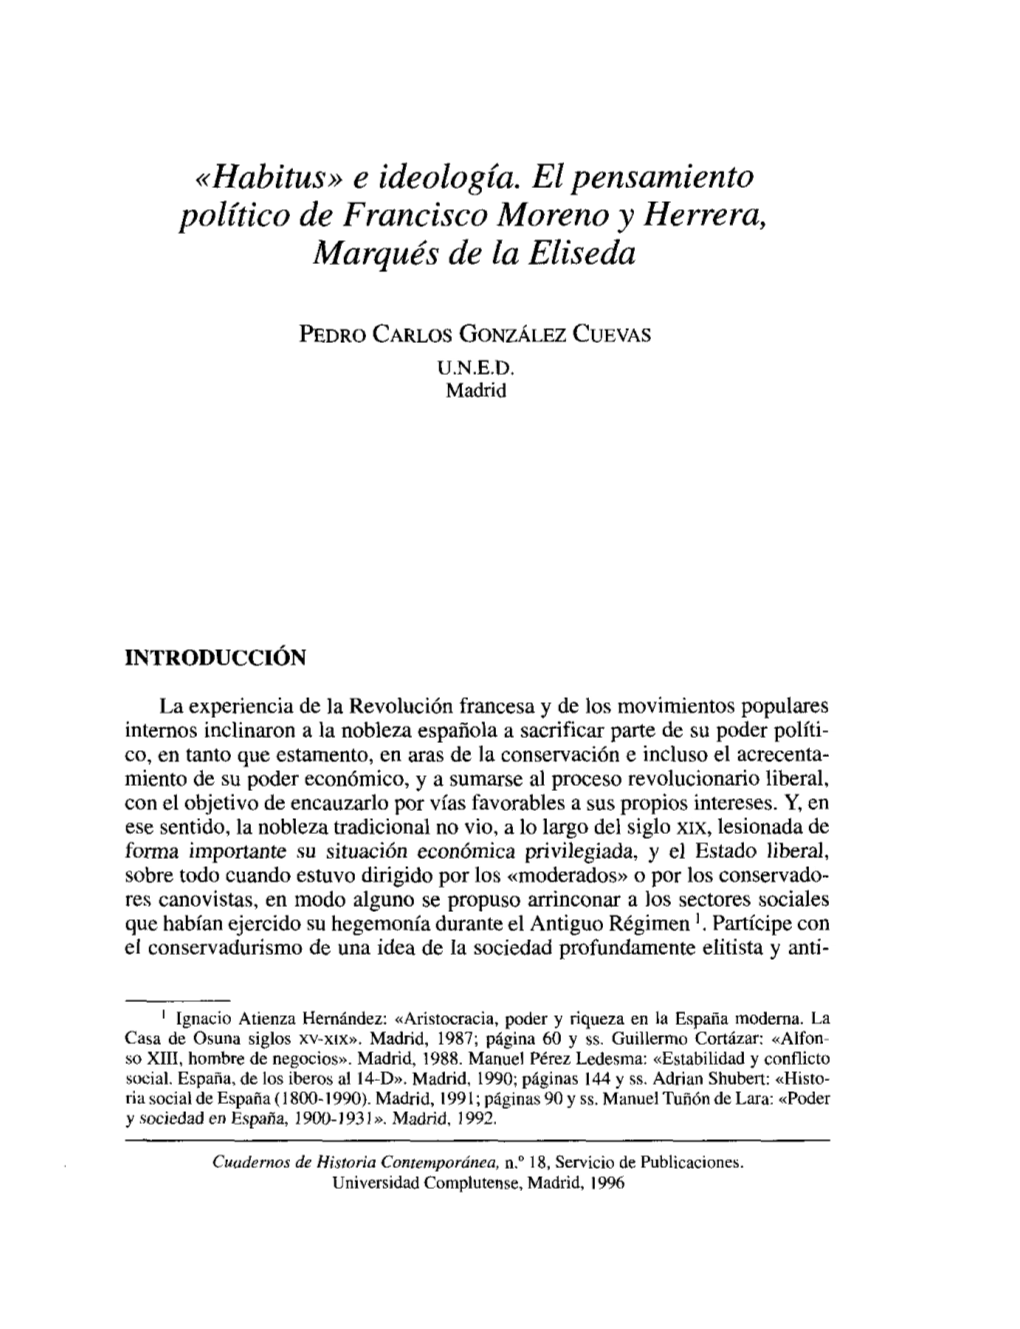 Habitus» E Ideología. El Pensamiento Político De Francisco Moreno Y Herrera, Marqués De La Eliseda